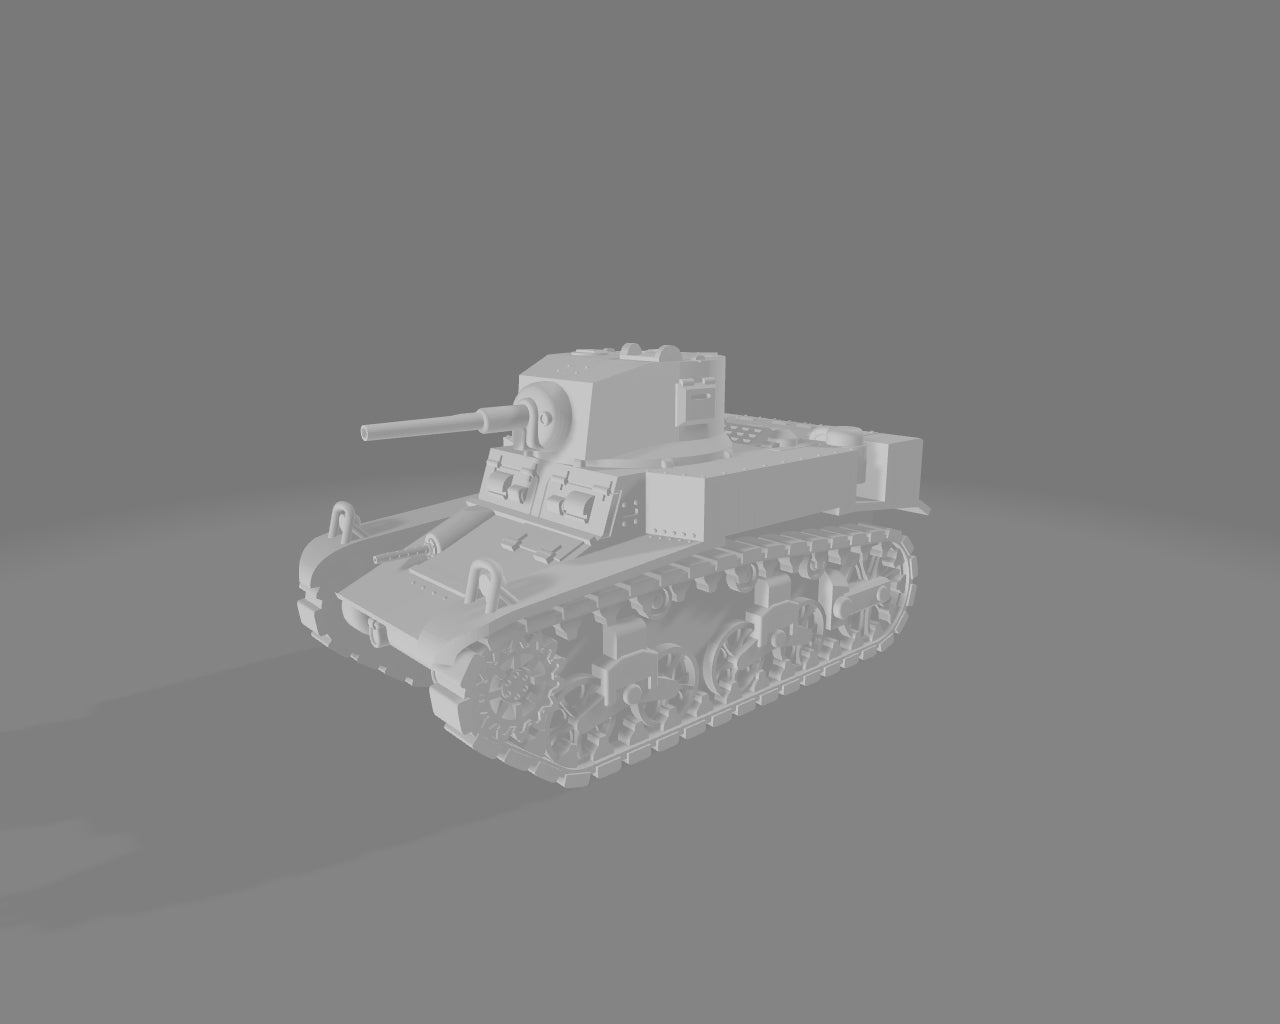 American M3A1 Stuart